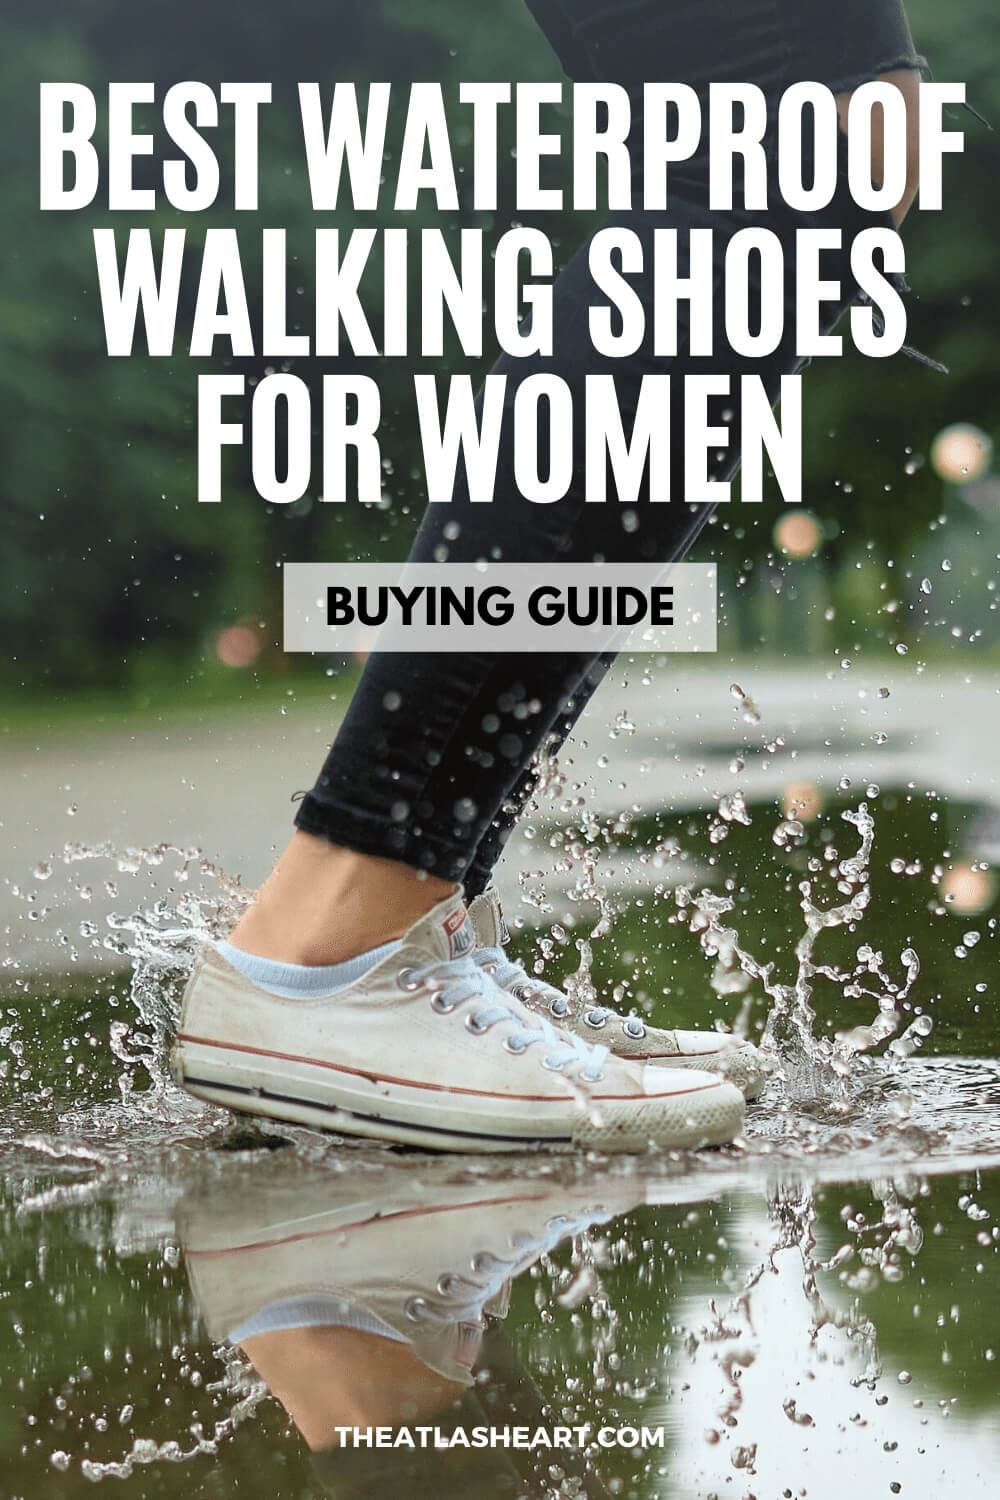 Best Waterproof Walking Shoes for Women